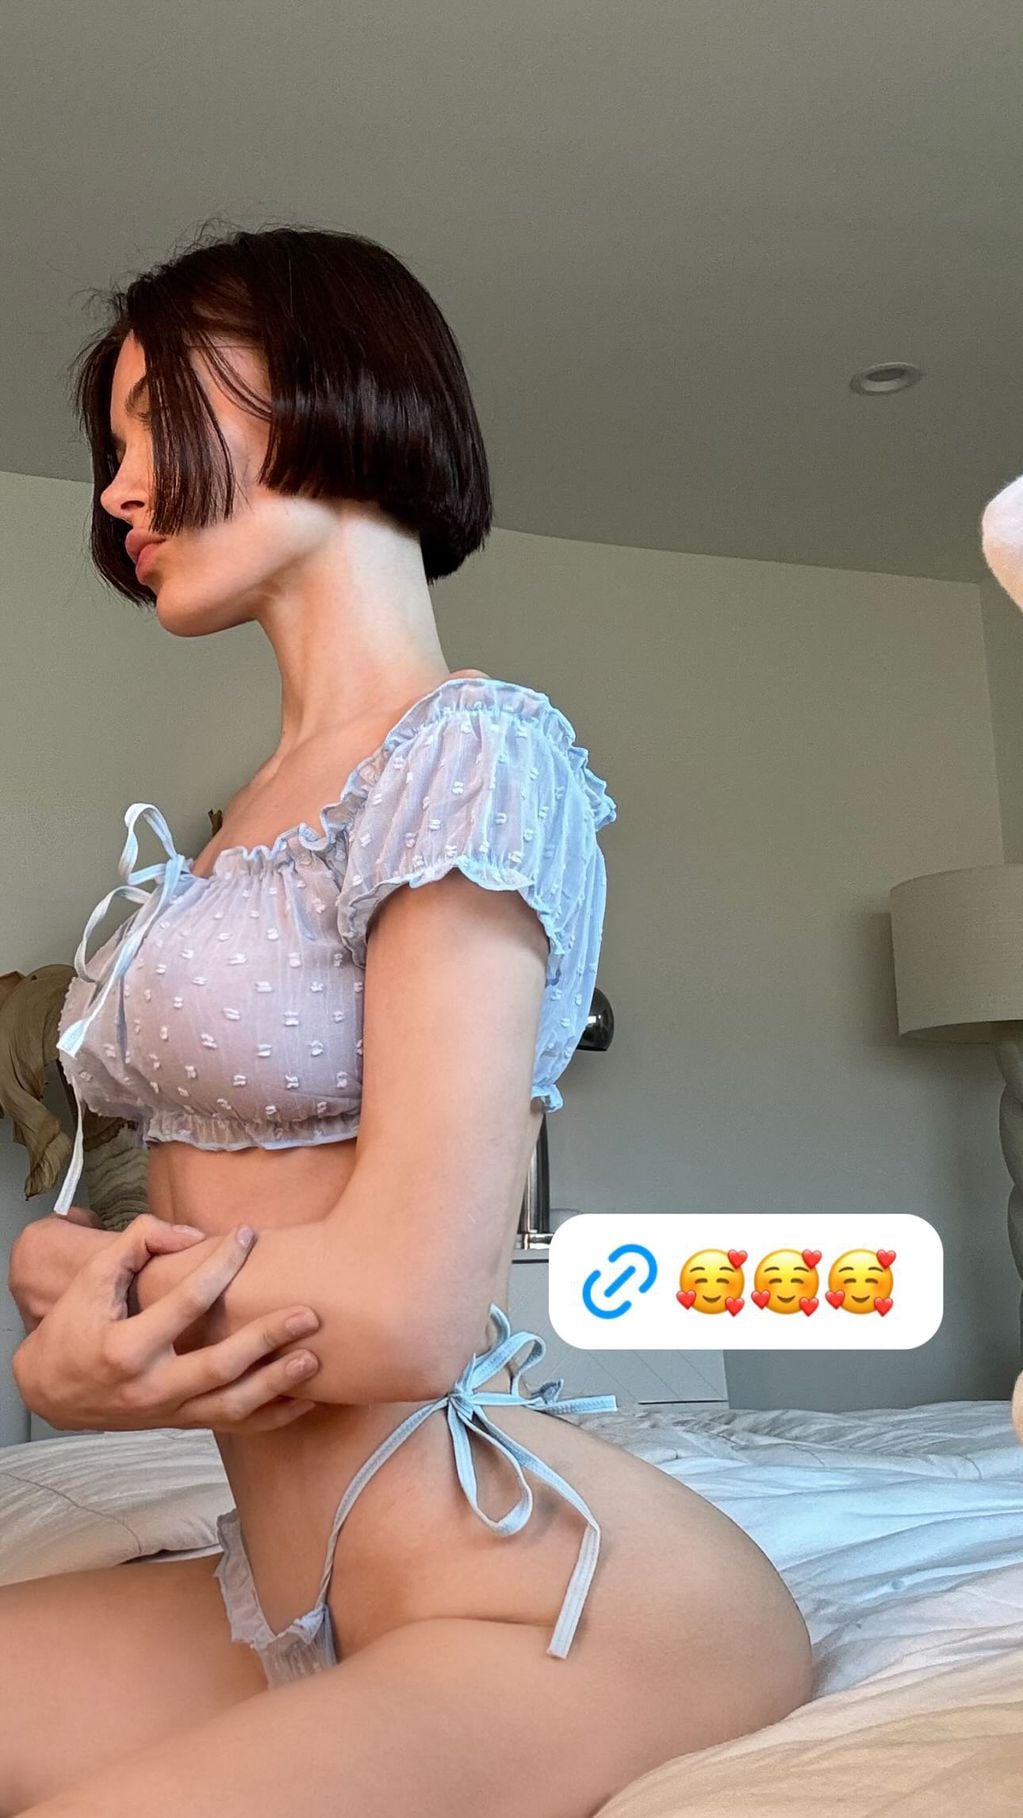 Lana Rhoades encendió Instagram con un conjunto de ropa interior ultra diminuto